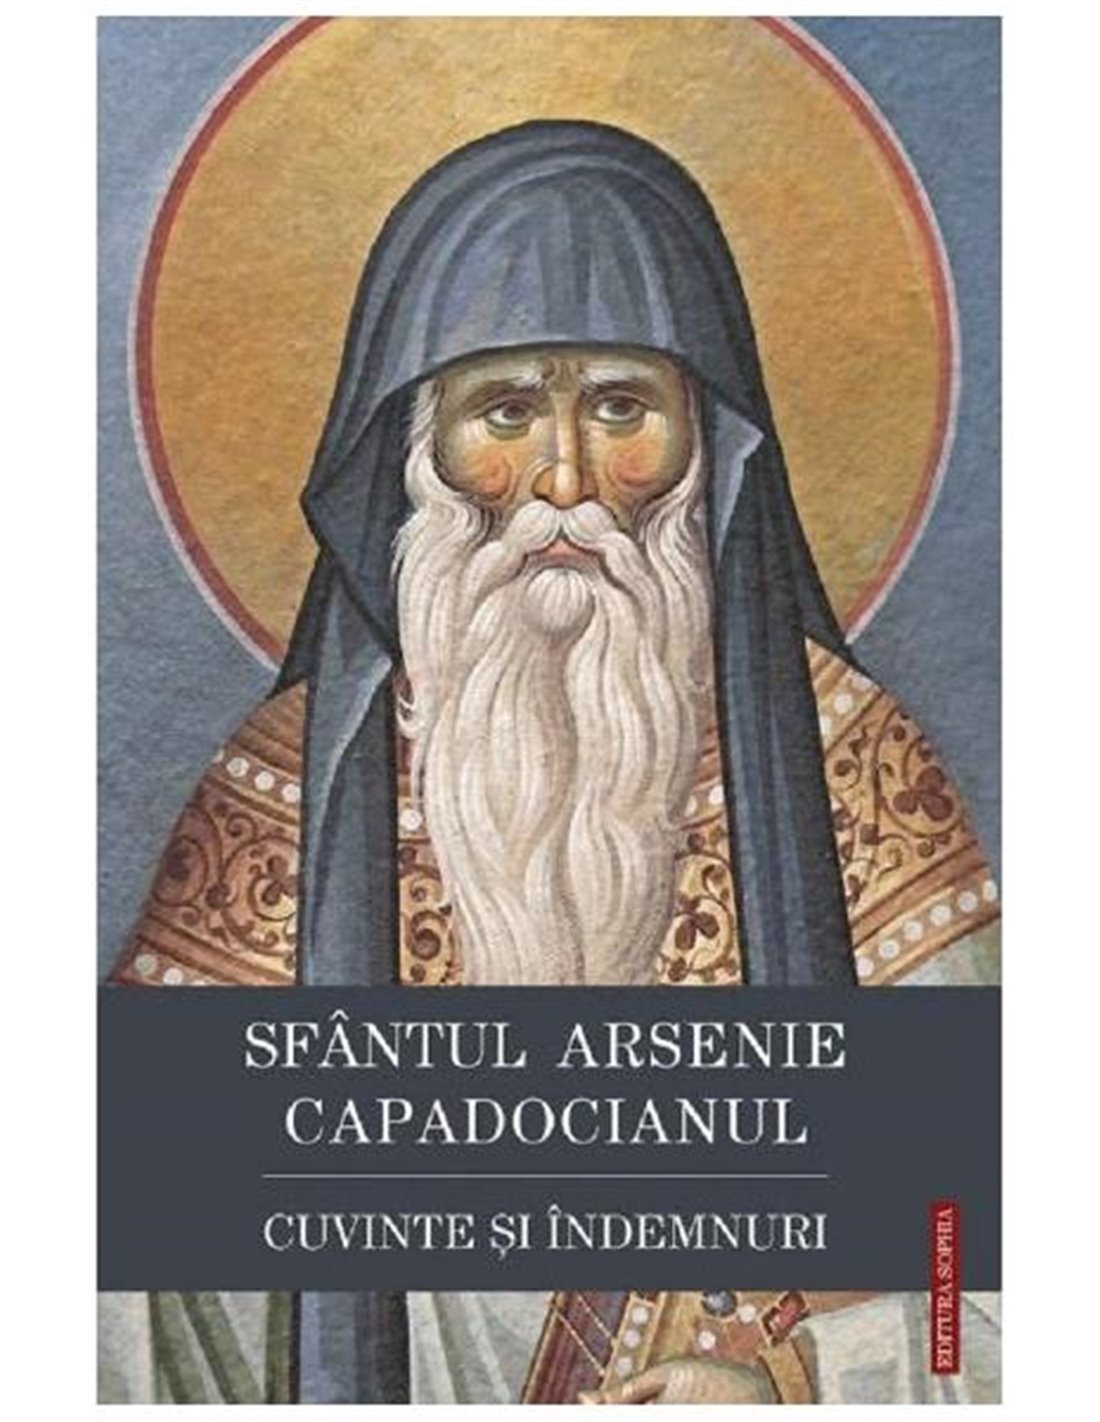 Cuvinte si indemnuri - Sfantul Arsenie Capadocianul | Editura Sophia